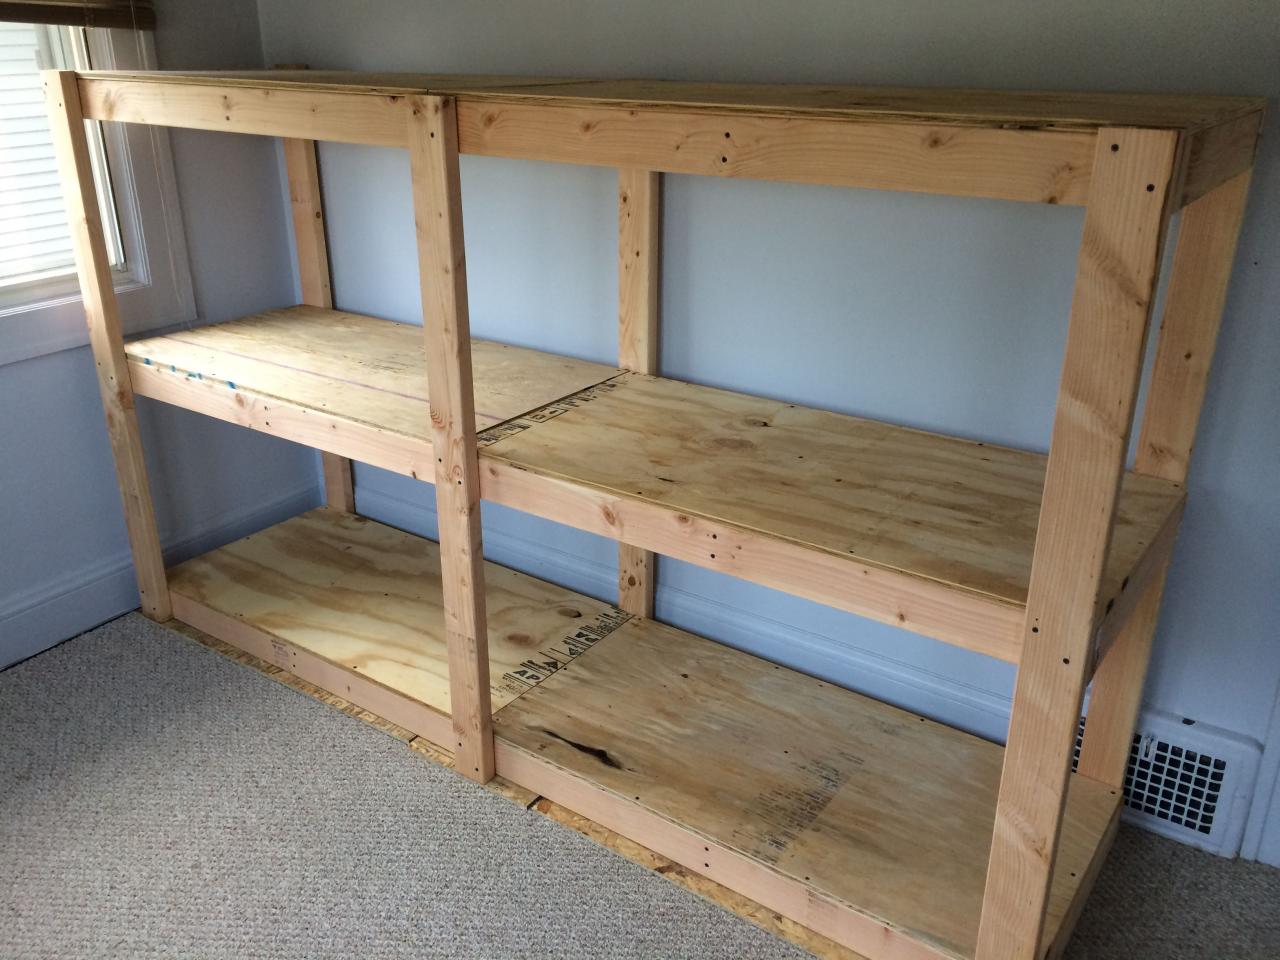 How I Built Heavy Duty Freestanding Shelves Shelves, Laundry room